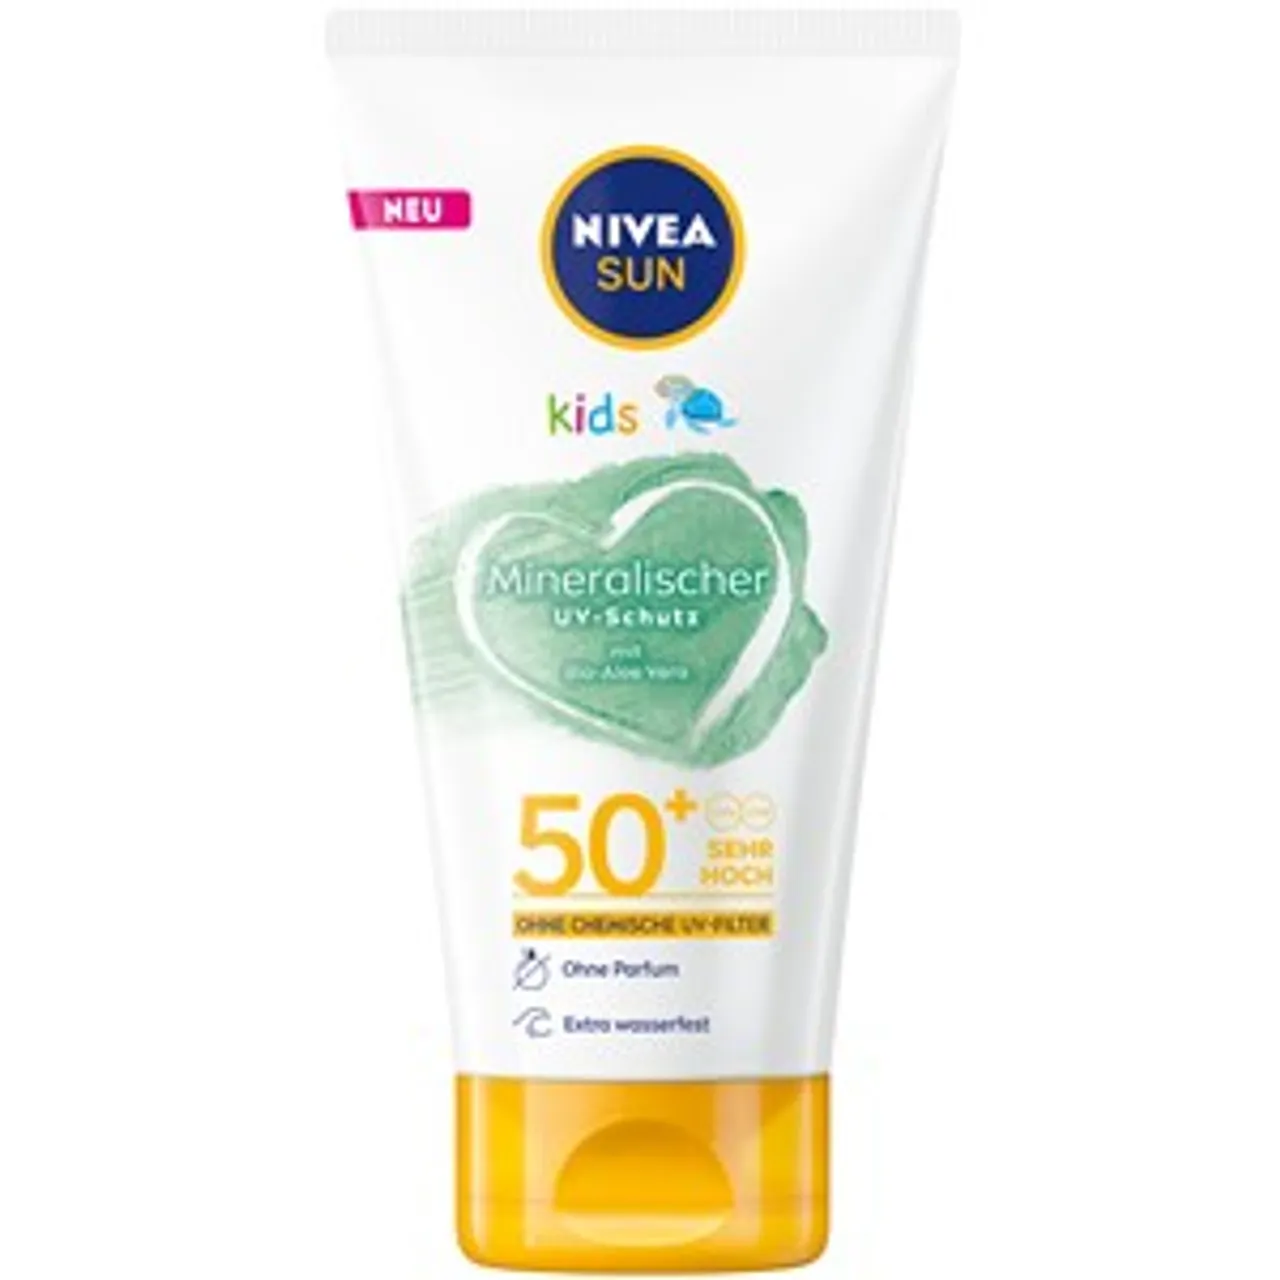 NIVEA Sonnenschutz Mineralischer UV-Schutz 50 SPF Damen